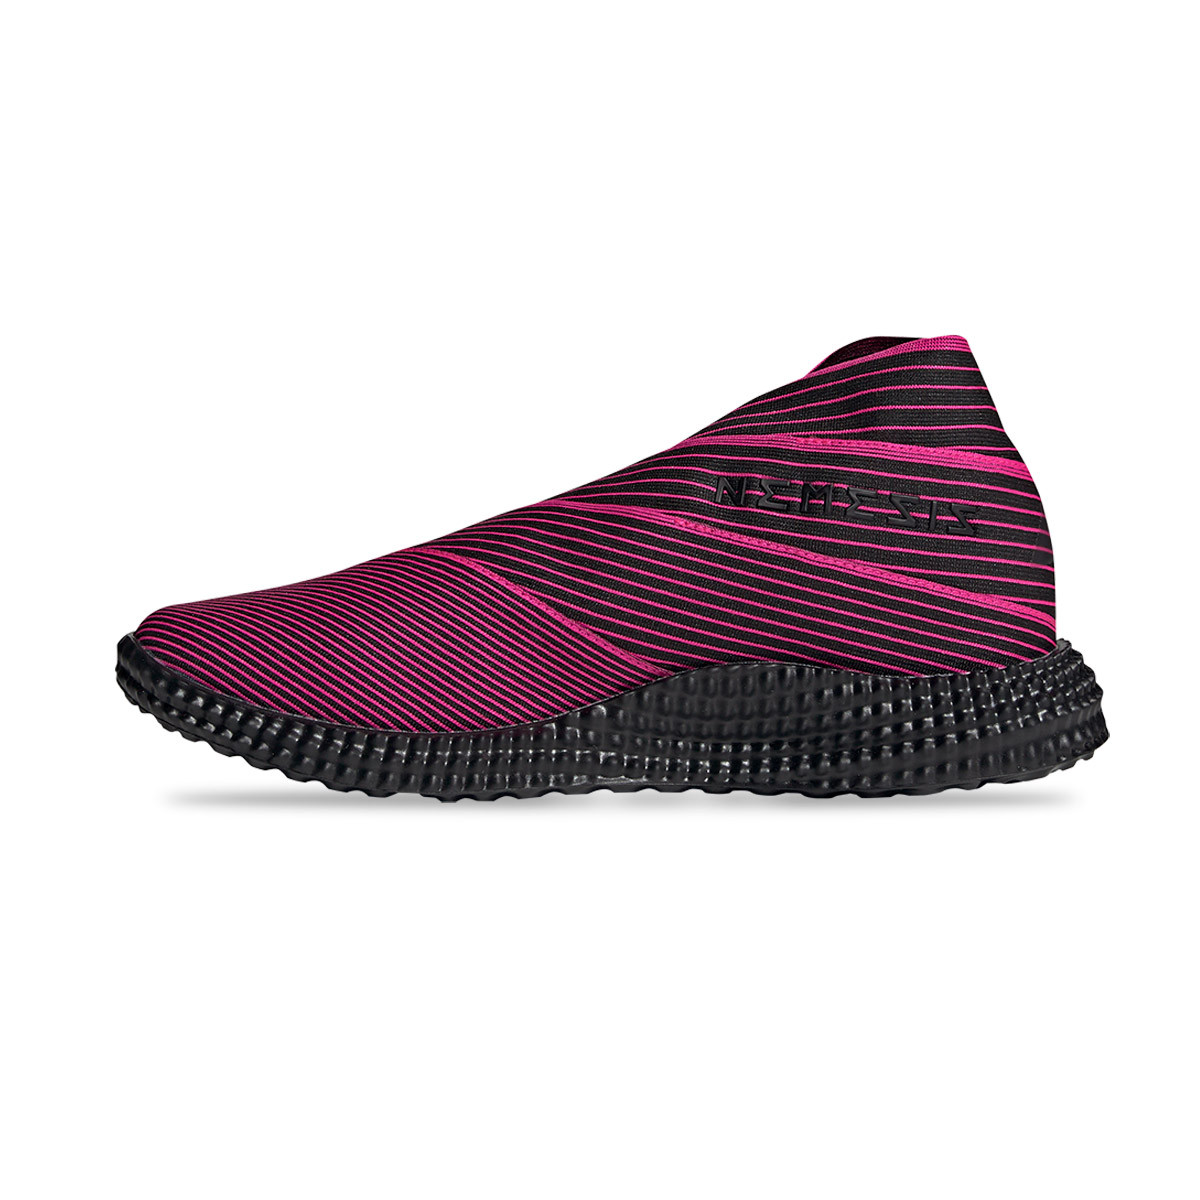 Baskets adidas Nemeziz 19.1 TR Core black-White-Shock pink 